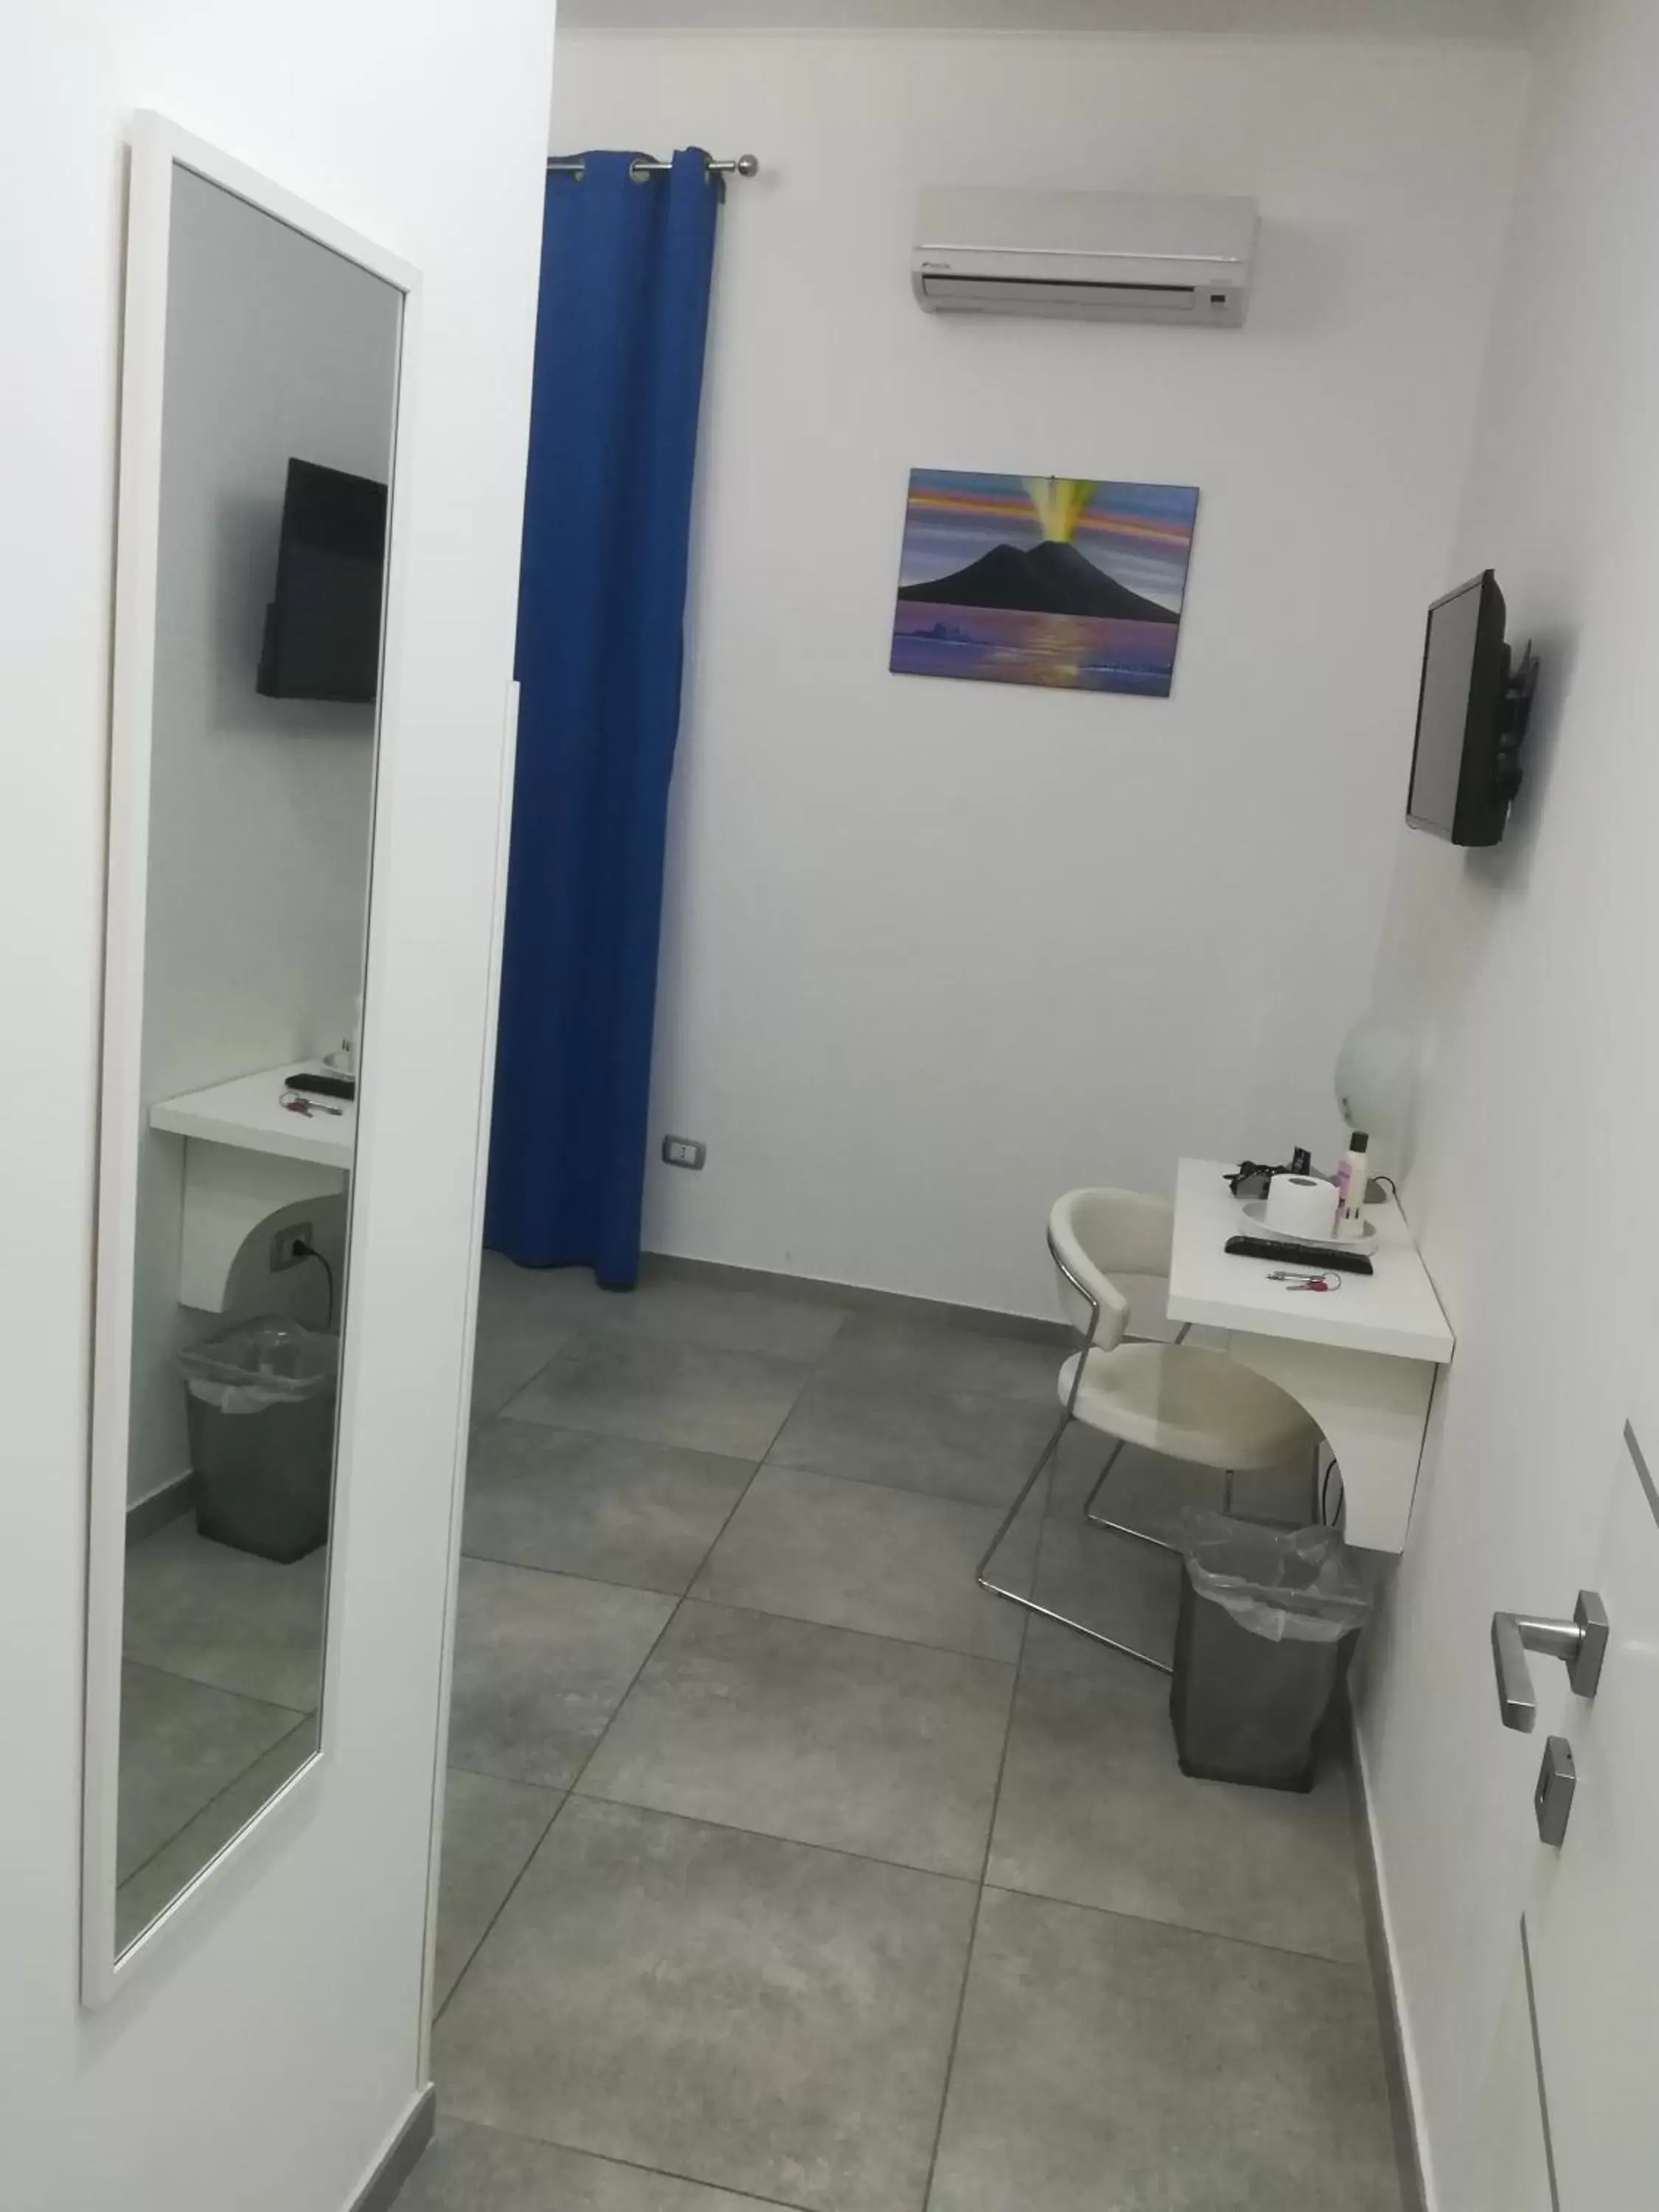 Bathroom in Stella Diana